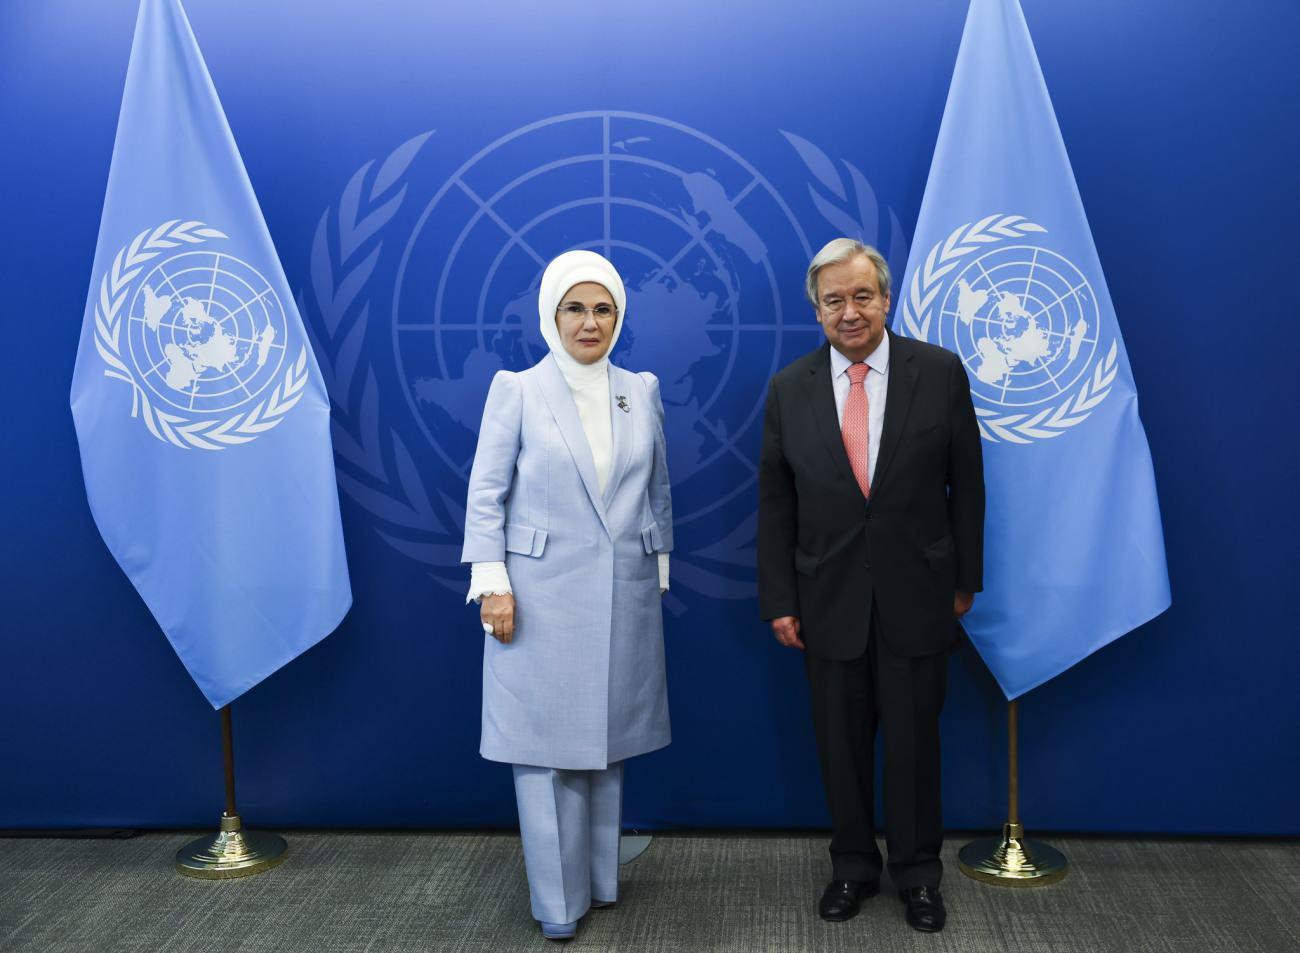 BM genel sekteri ve Emine Erdoğan iyi niyet beyanı imzaladı